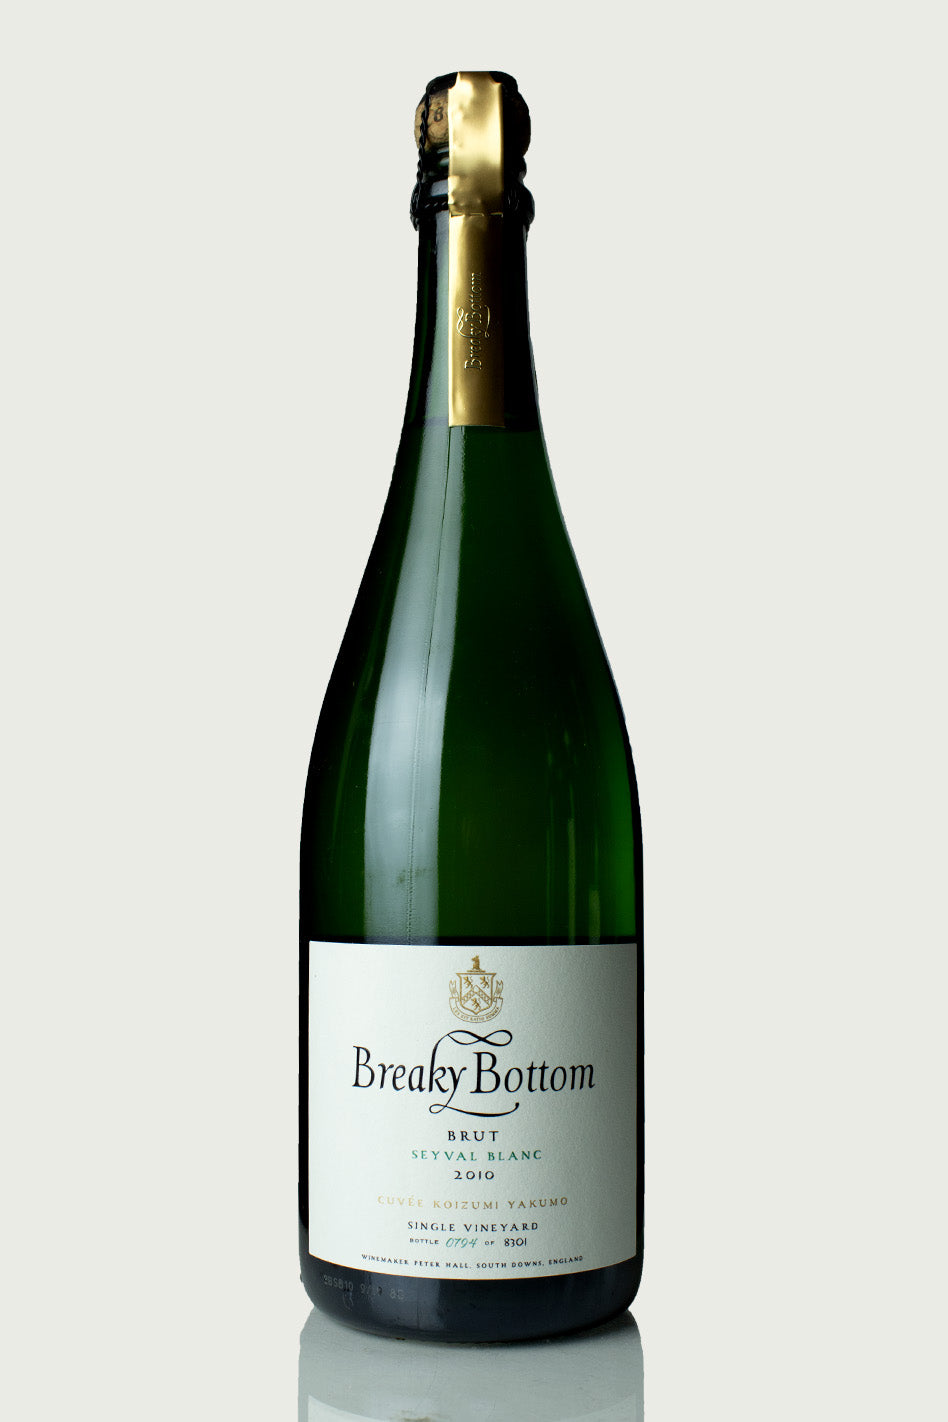 Breaky Bottom 'Koizumi Yakumo' Seyval Blanc 2010